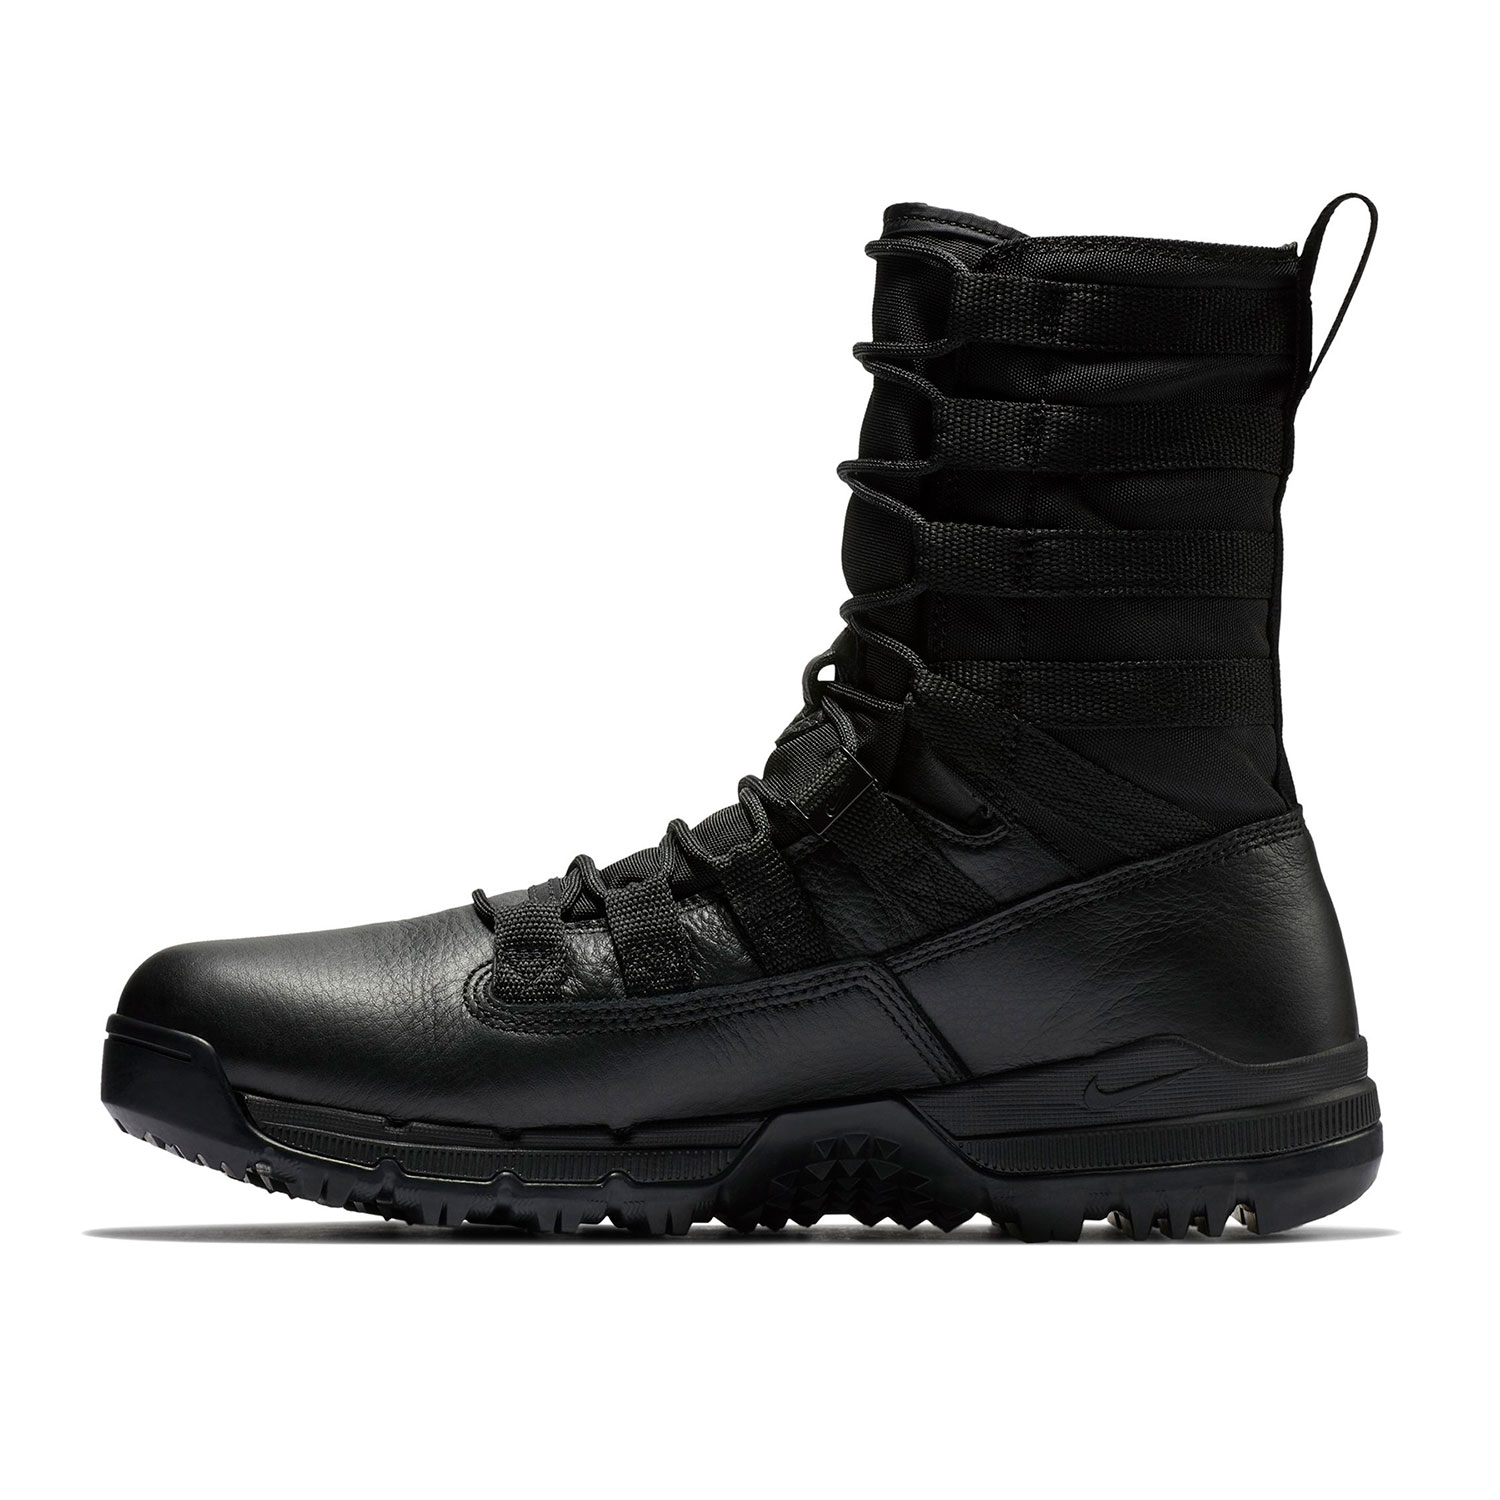 Nike SFB Gen 2 GTX 8" Boots